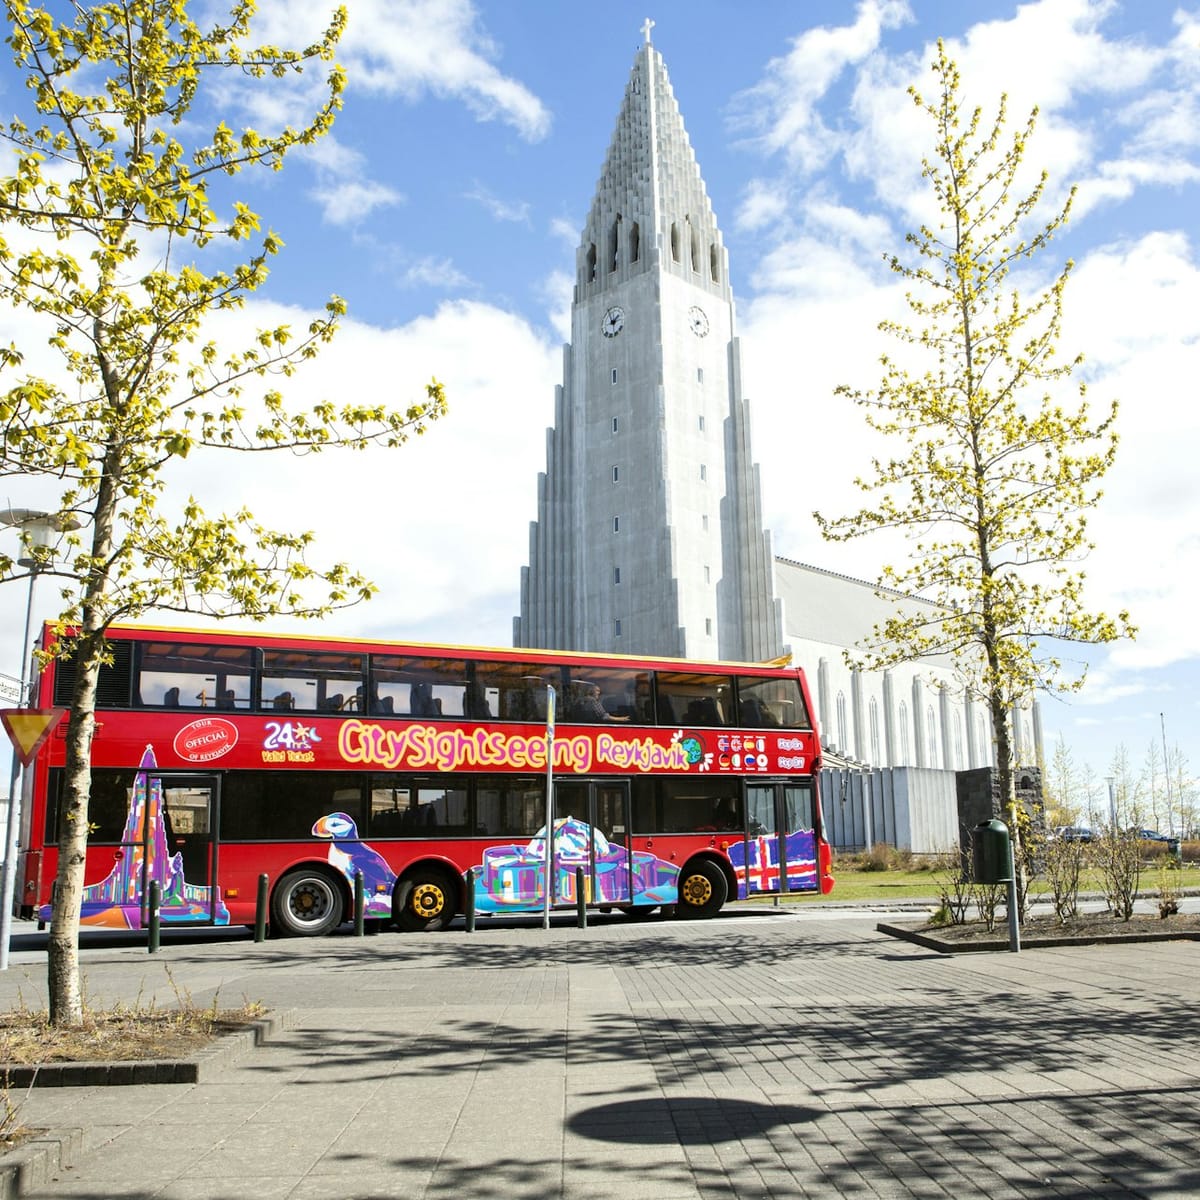 city-sightseeing-reykjavik-24-hr-or-48-hr-hop-on-hop-off-bus_1